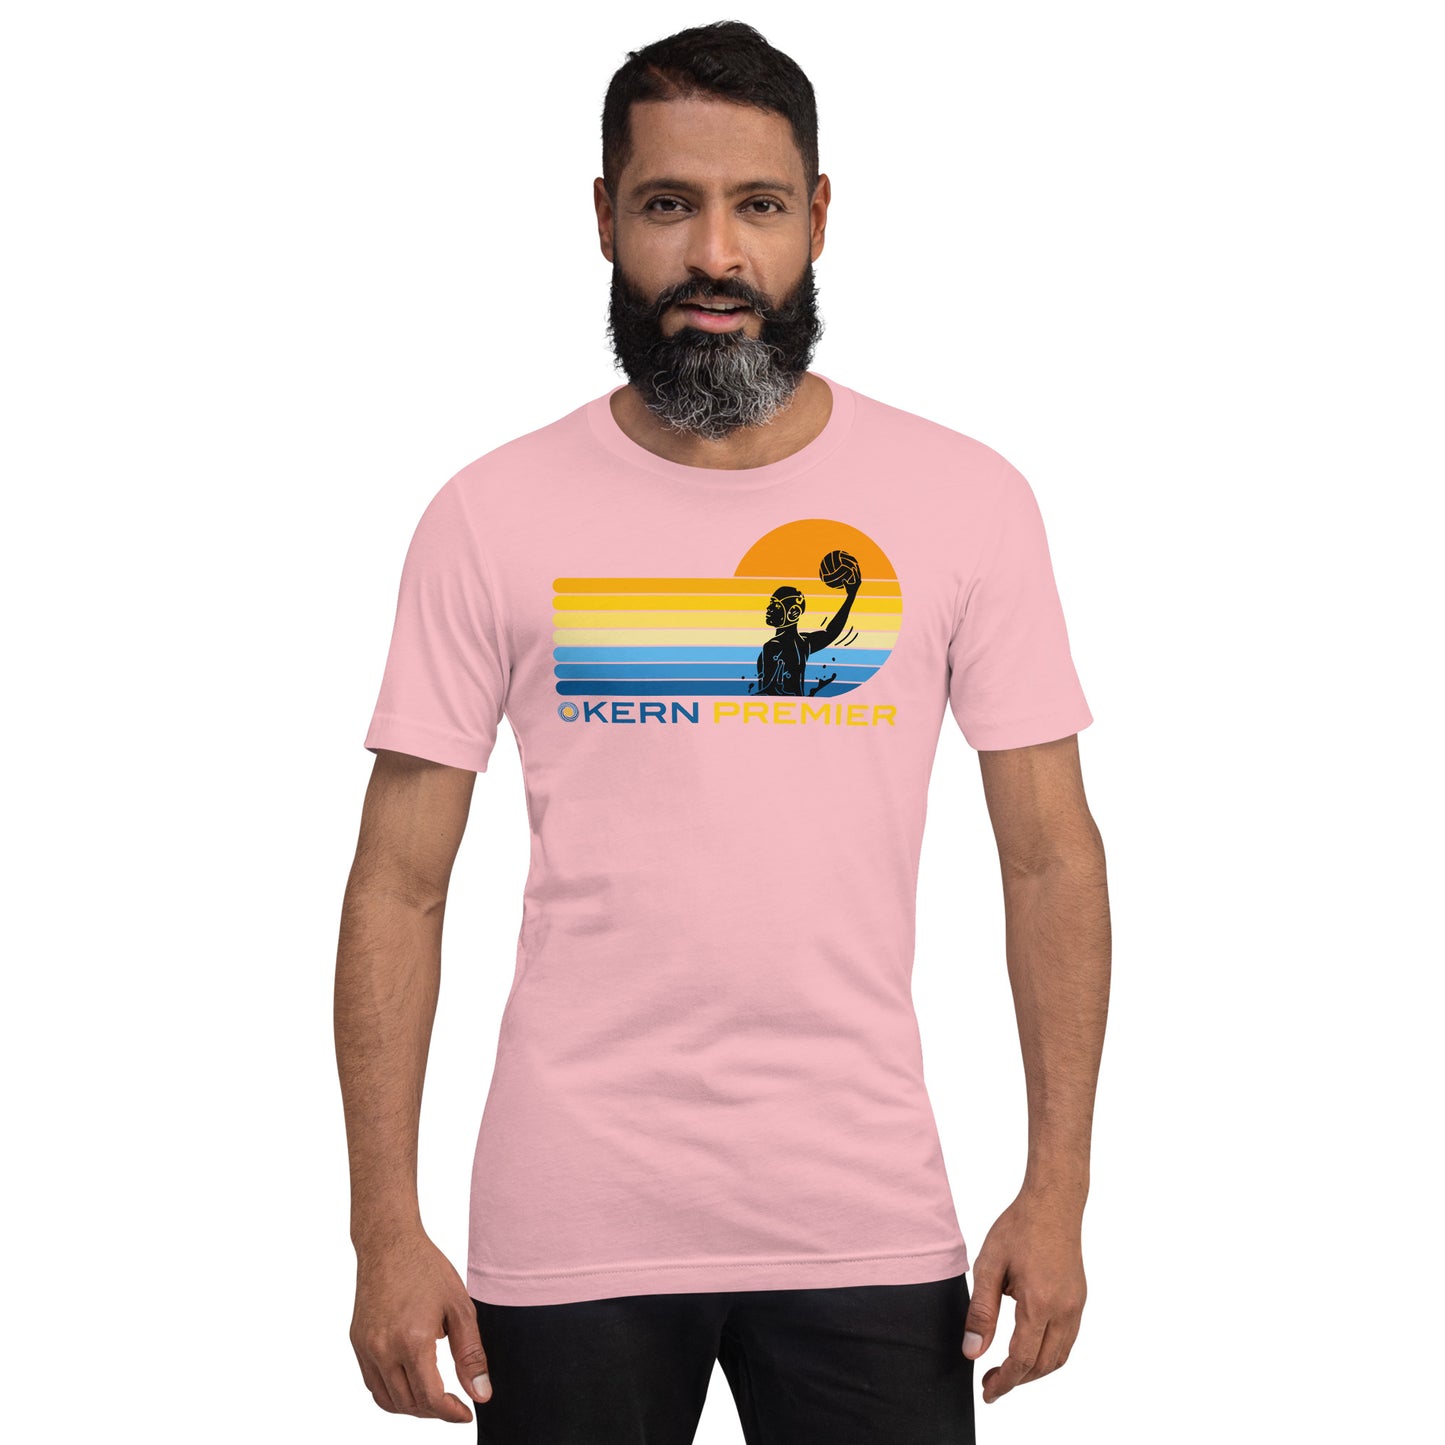 Kern Premier 7 color sunset male silhouette - Unisex Soft T-shirt - Bella Canvas 3001